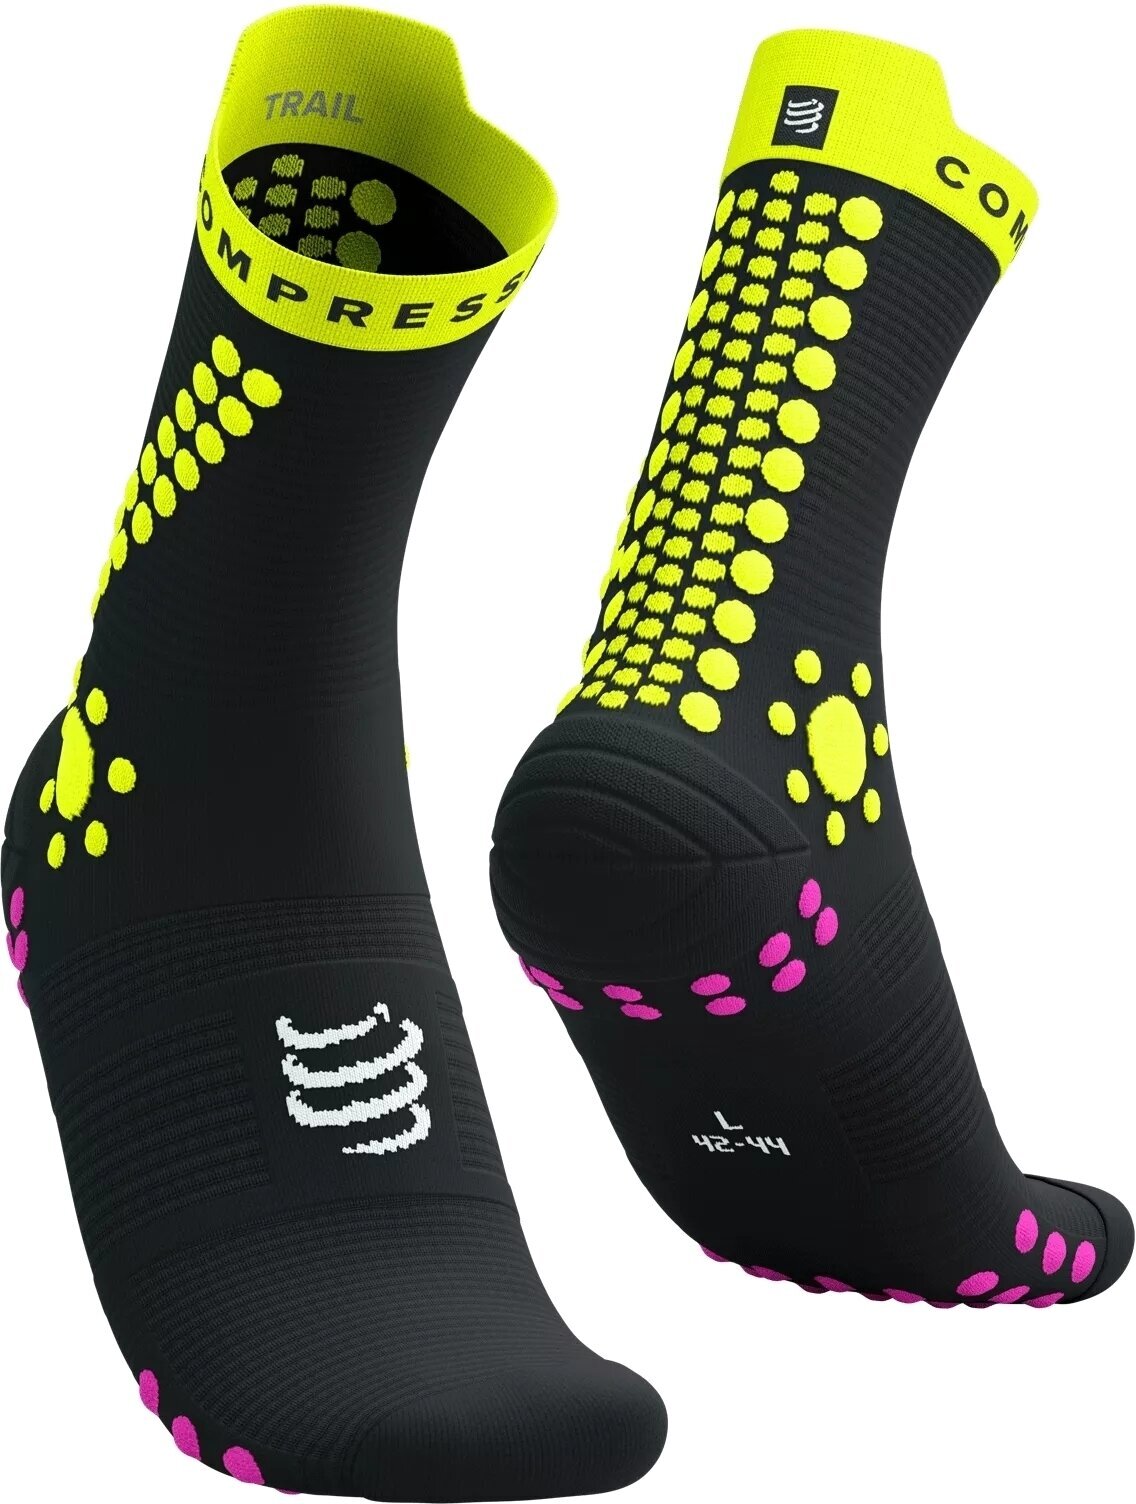 Bežecké ponožky
 Compressport Pro Racing Socks V4.0 Trail Black/Safety Yellow/Neon Pink T4 Bežecké ponožky